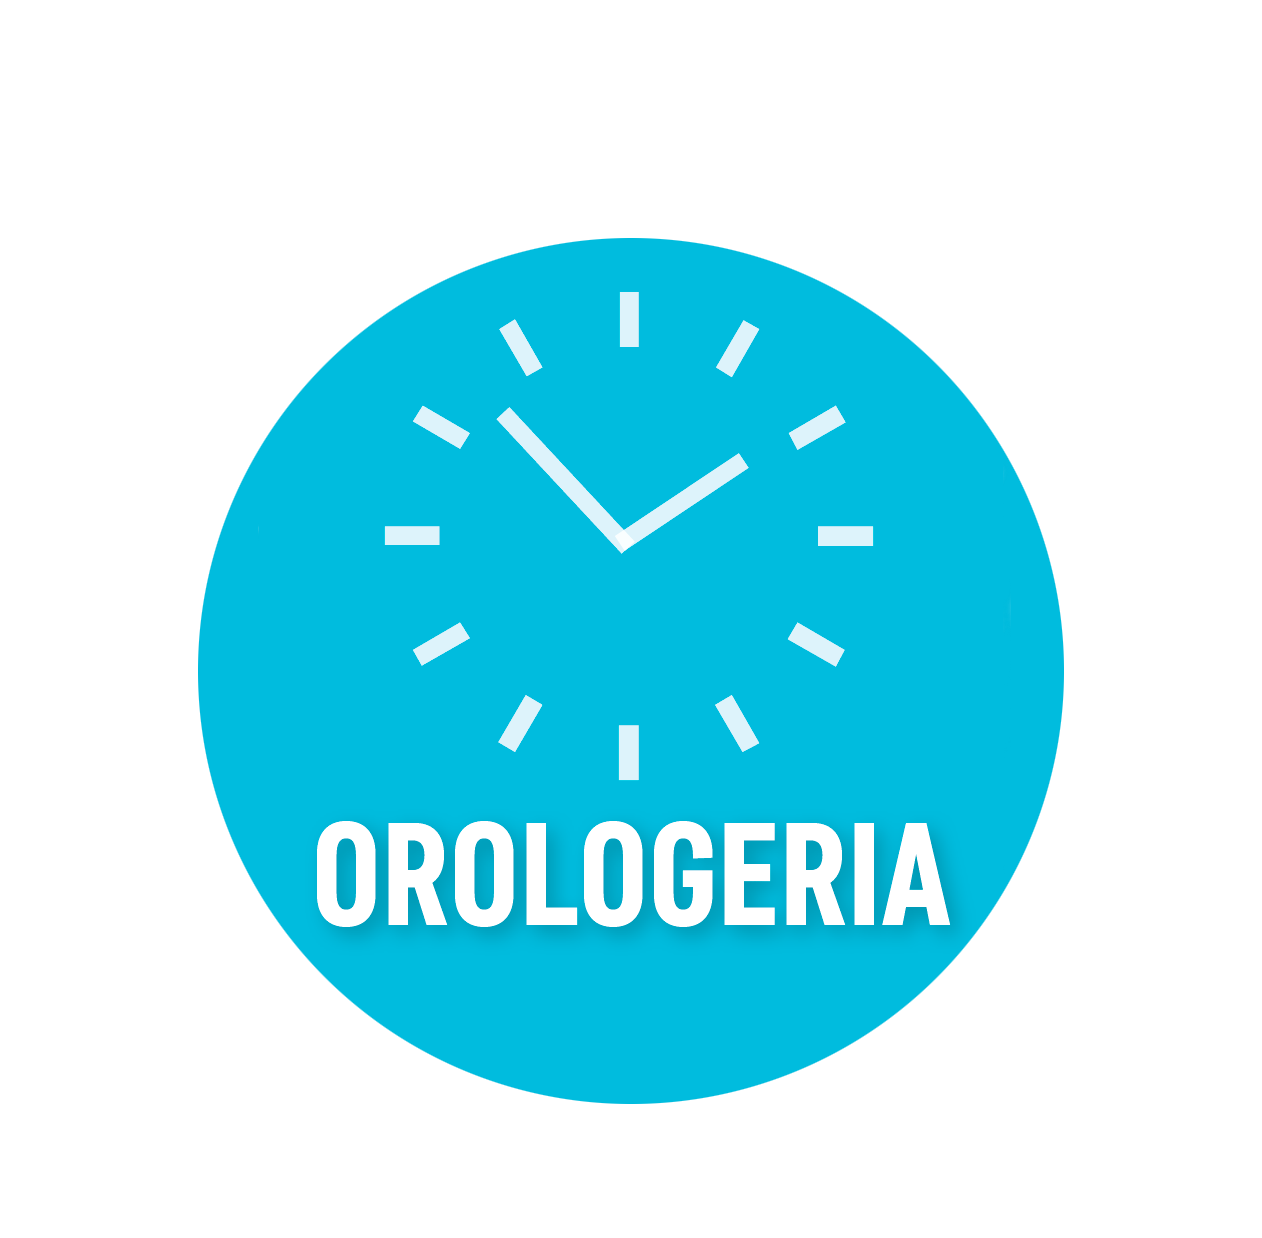 Orologeria